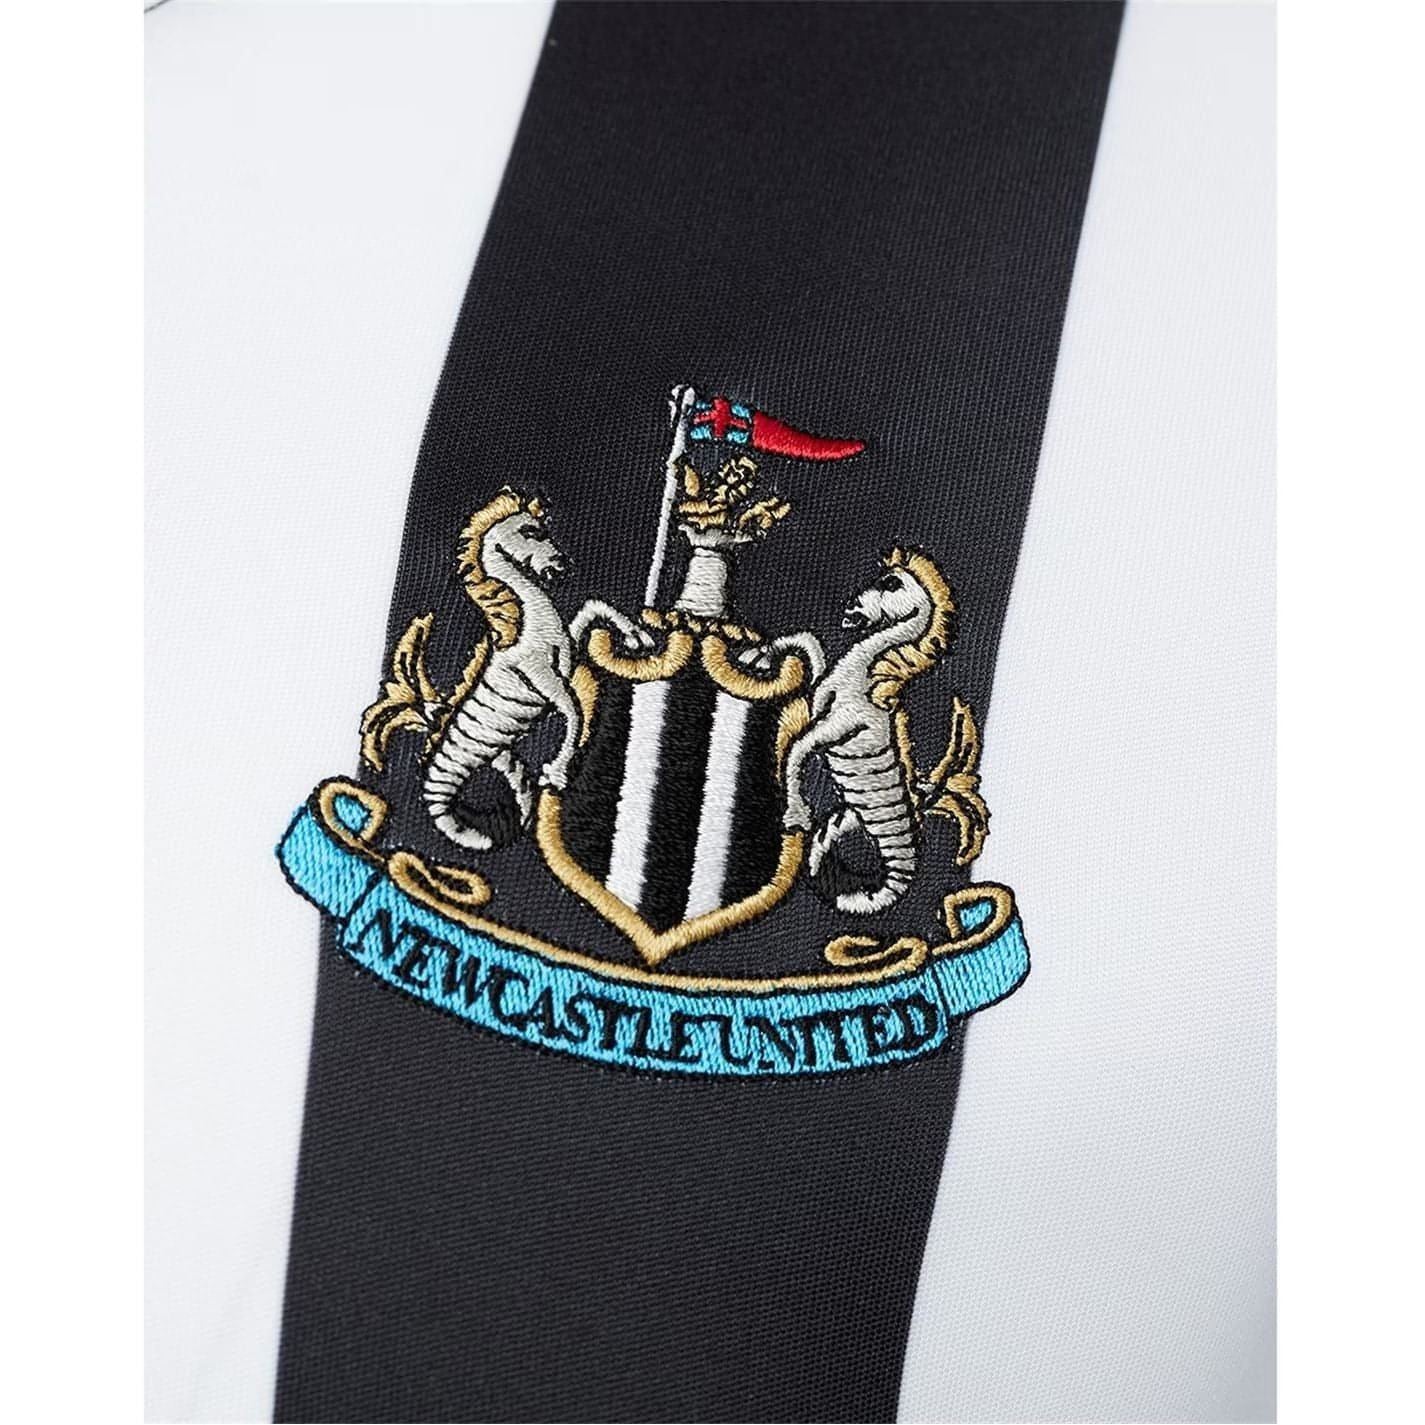 Castore Newcastle United Home Mens Shirt Tm3736 Details